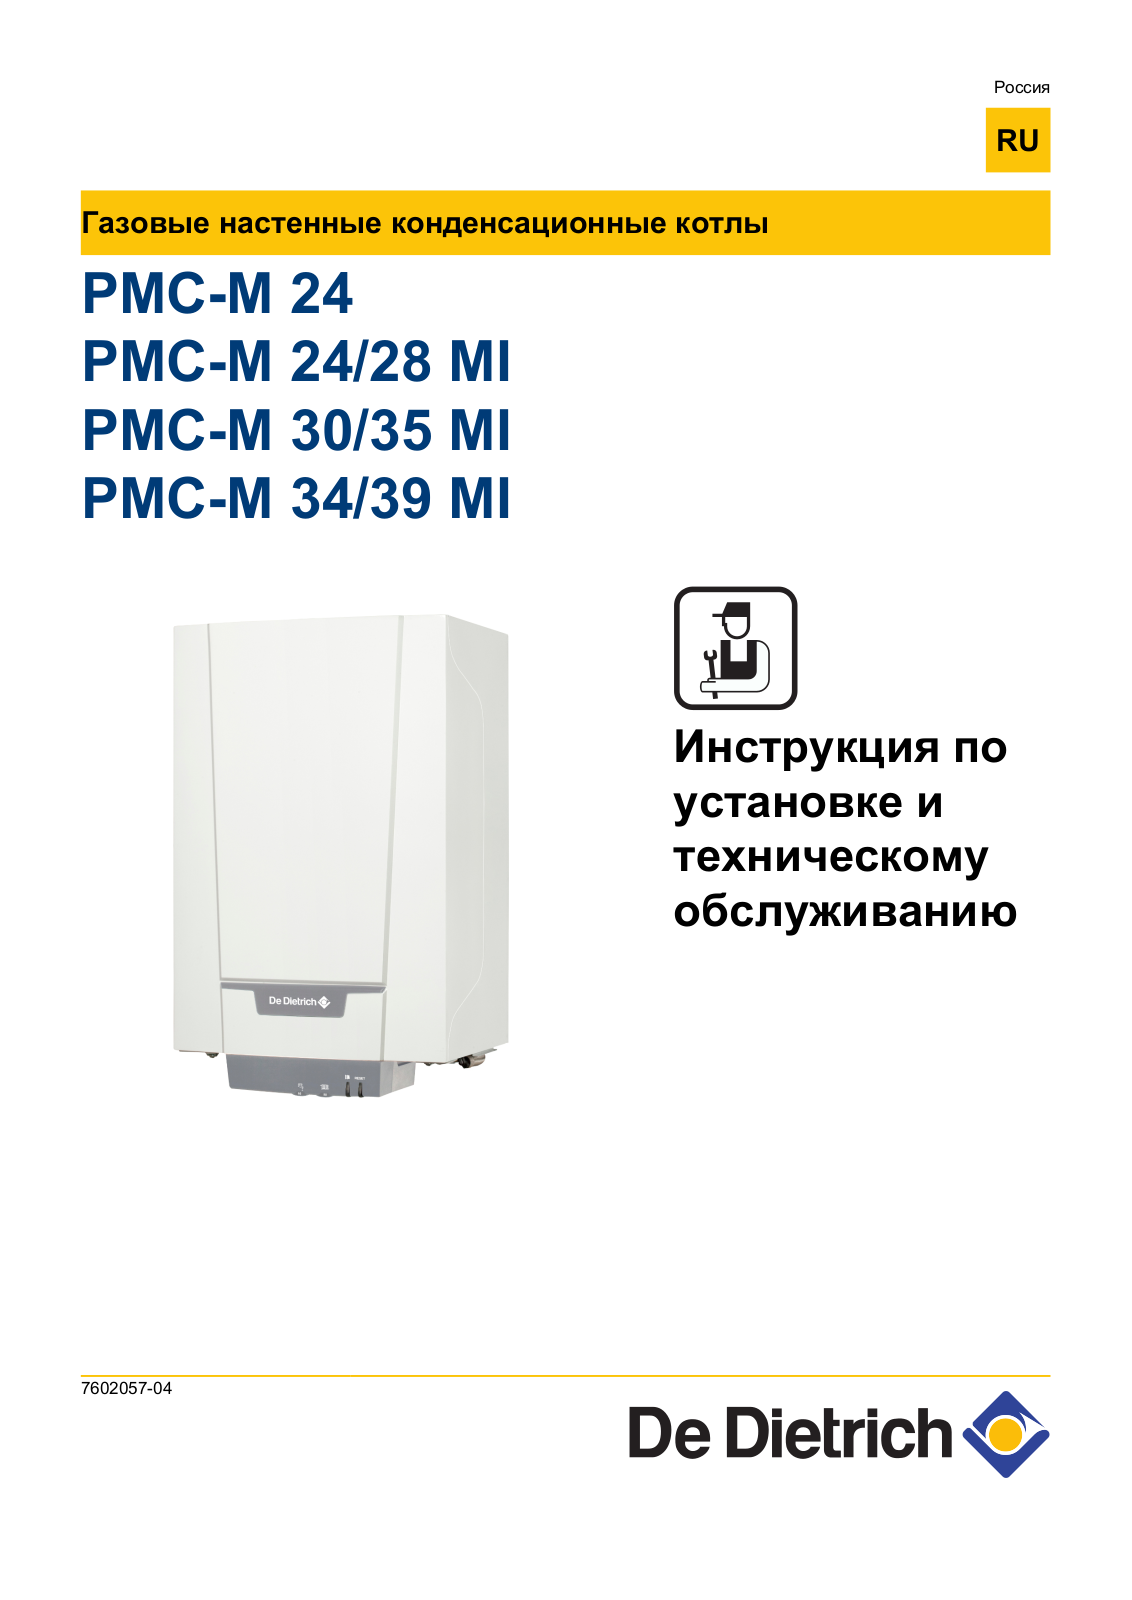 DE DIETRICH PMC-M 28 MI, PMC-M 30, PMC-M 34, PMC-M, PMC-M 35 MI User Manual